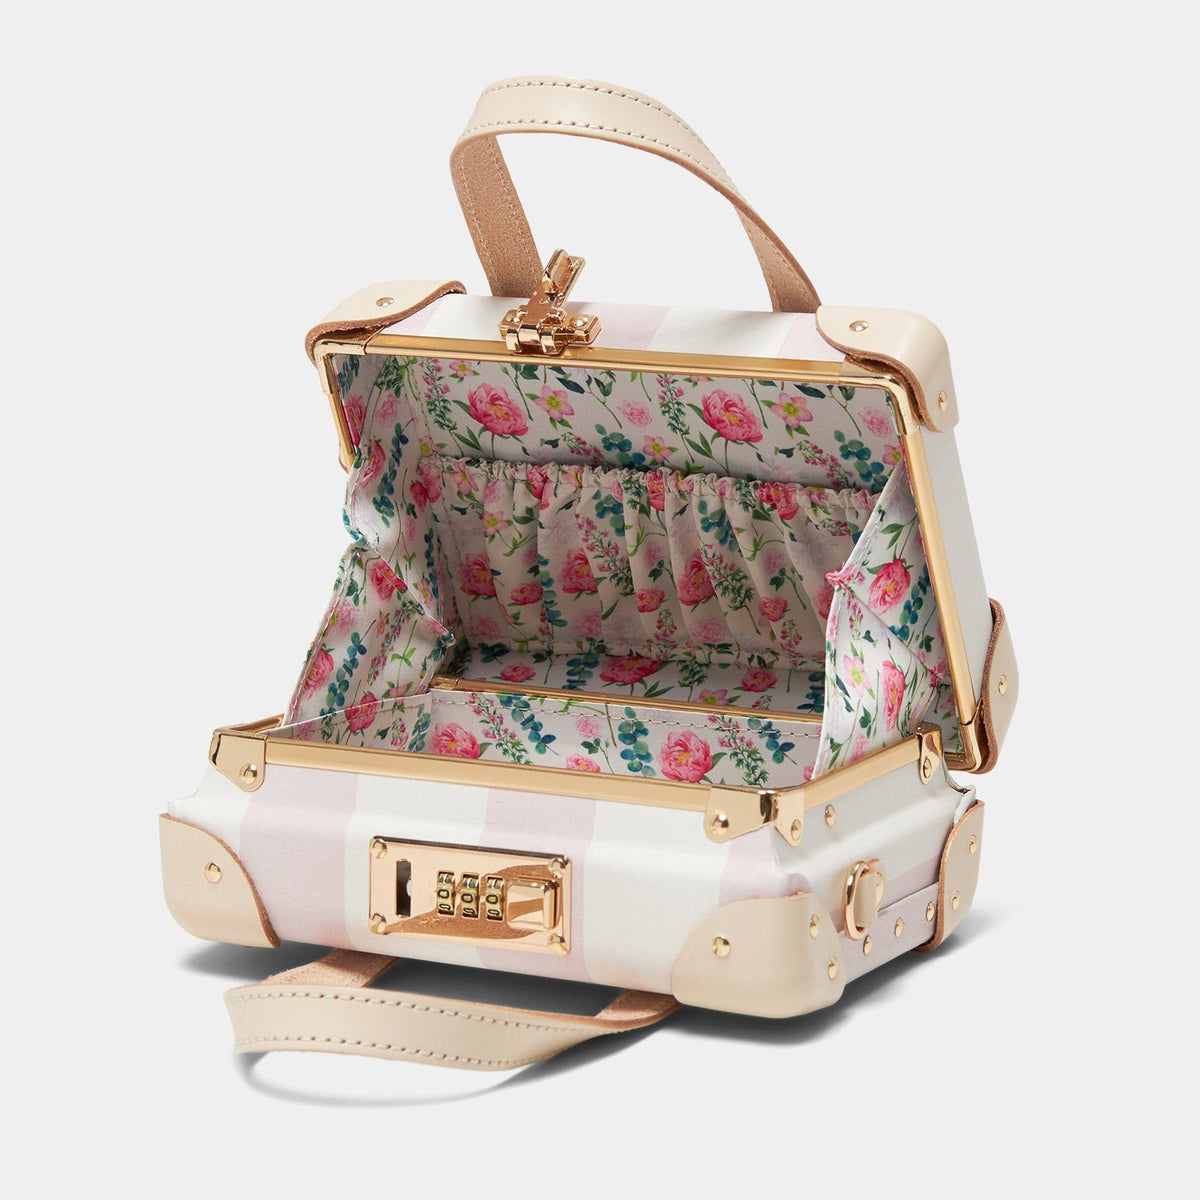 The Illustrator - Pink Mini Mini Steamline Luggage 